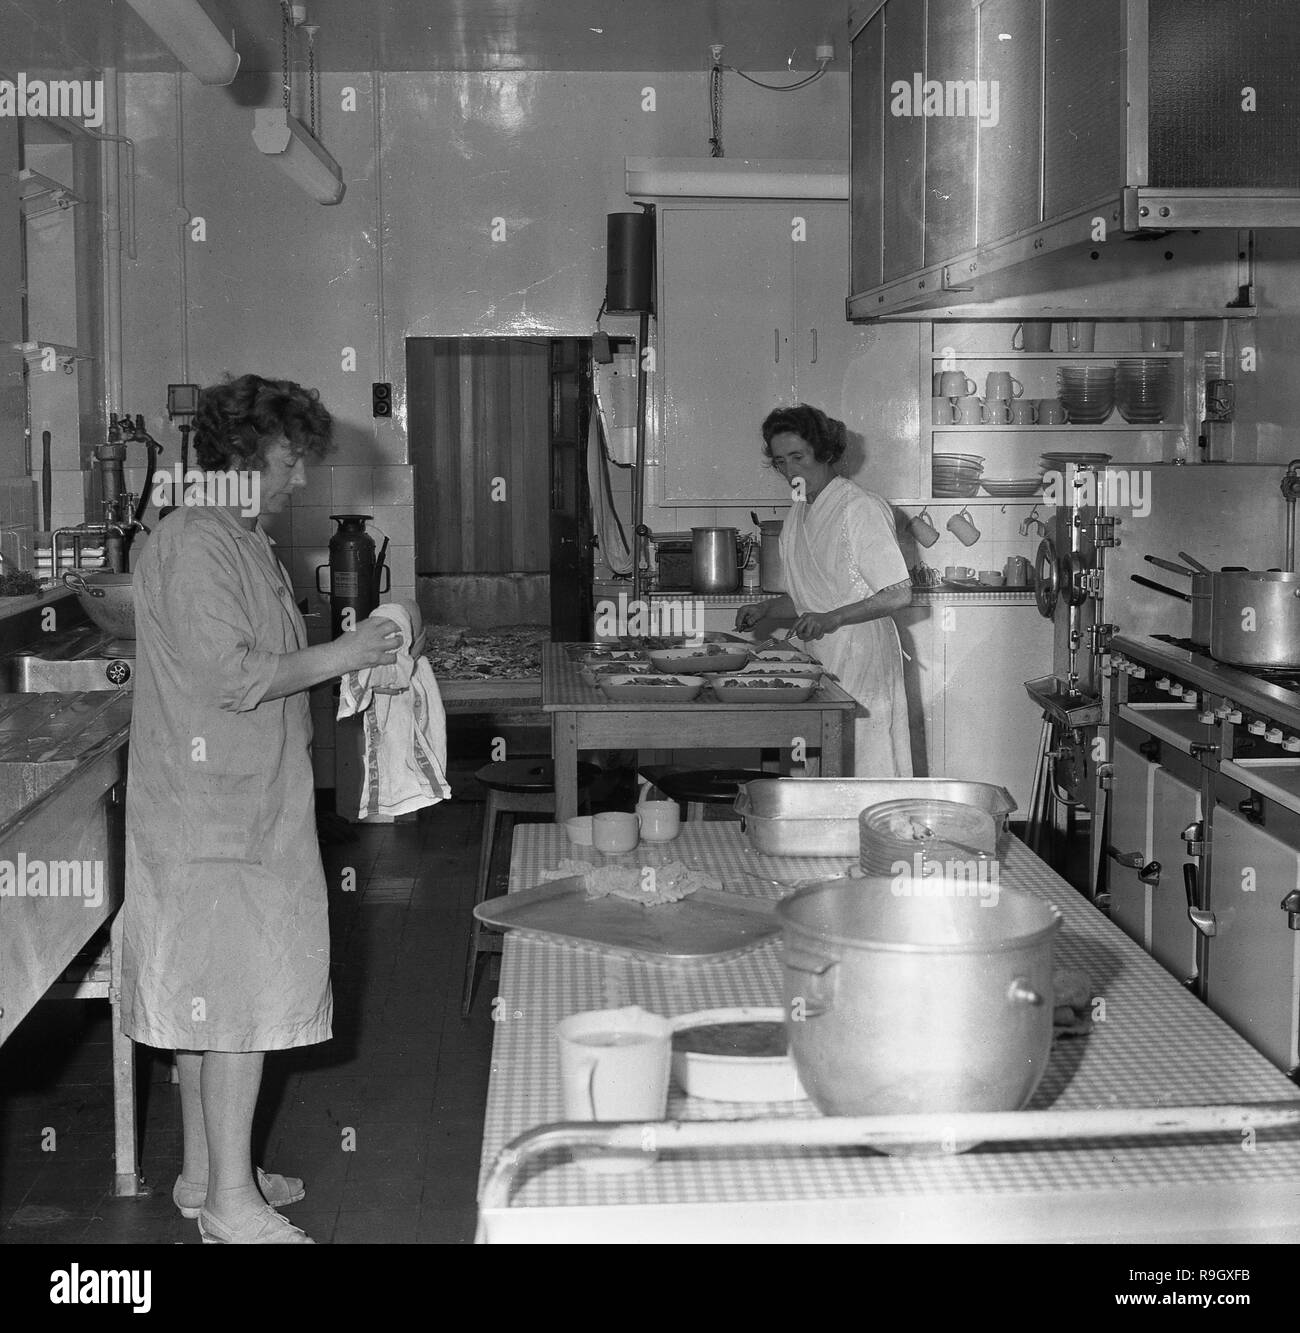 1968, le sud de Londres, des garçons boarding school, en Angleterre, deux femmes cuisiniers travaillent dans l'école cuisine, England, UK. Banque D'Images